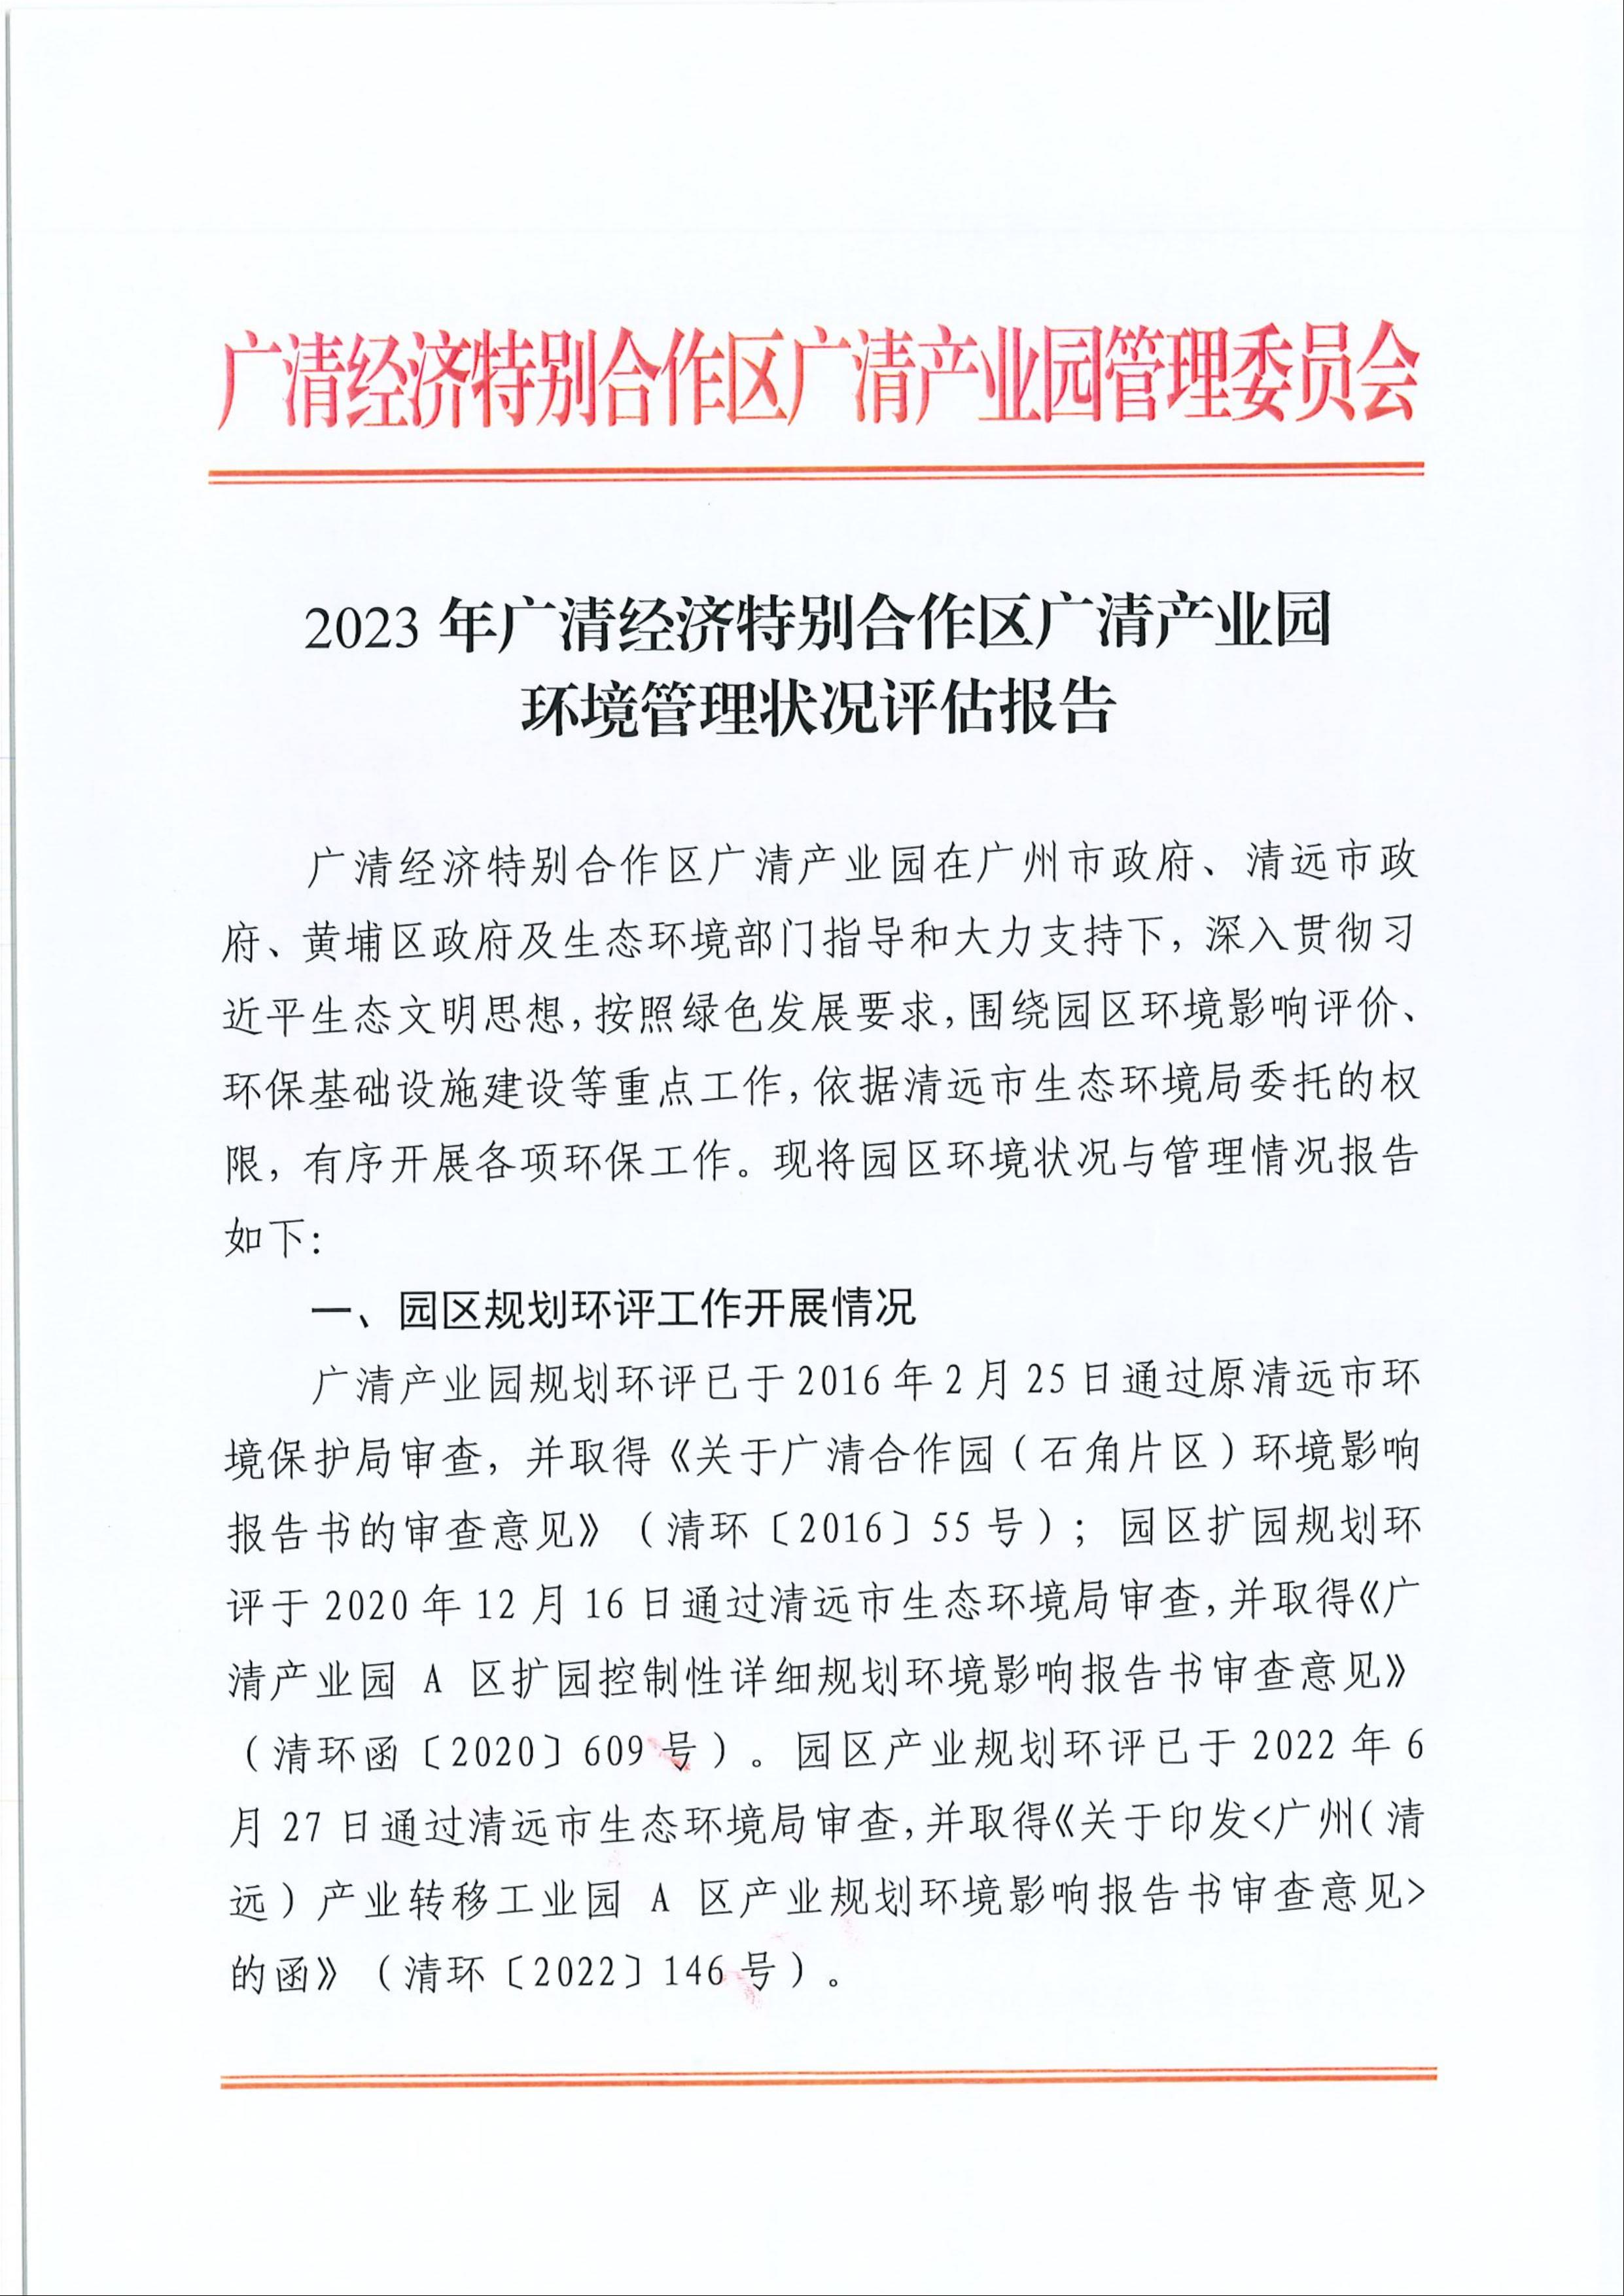 2023年广清经济特别合作区广清产业园环境管理状况评估报告1.jpeg